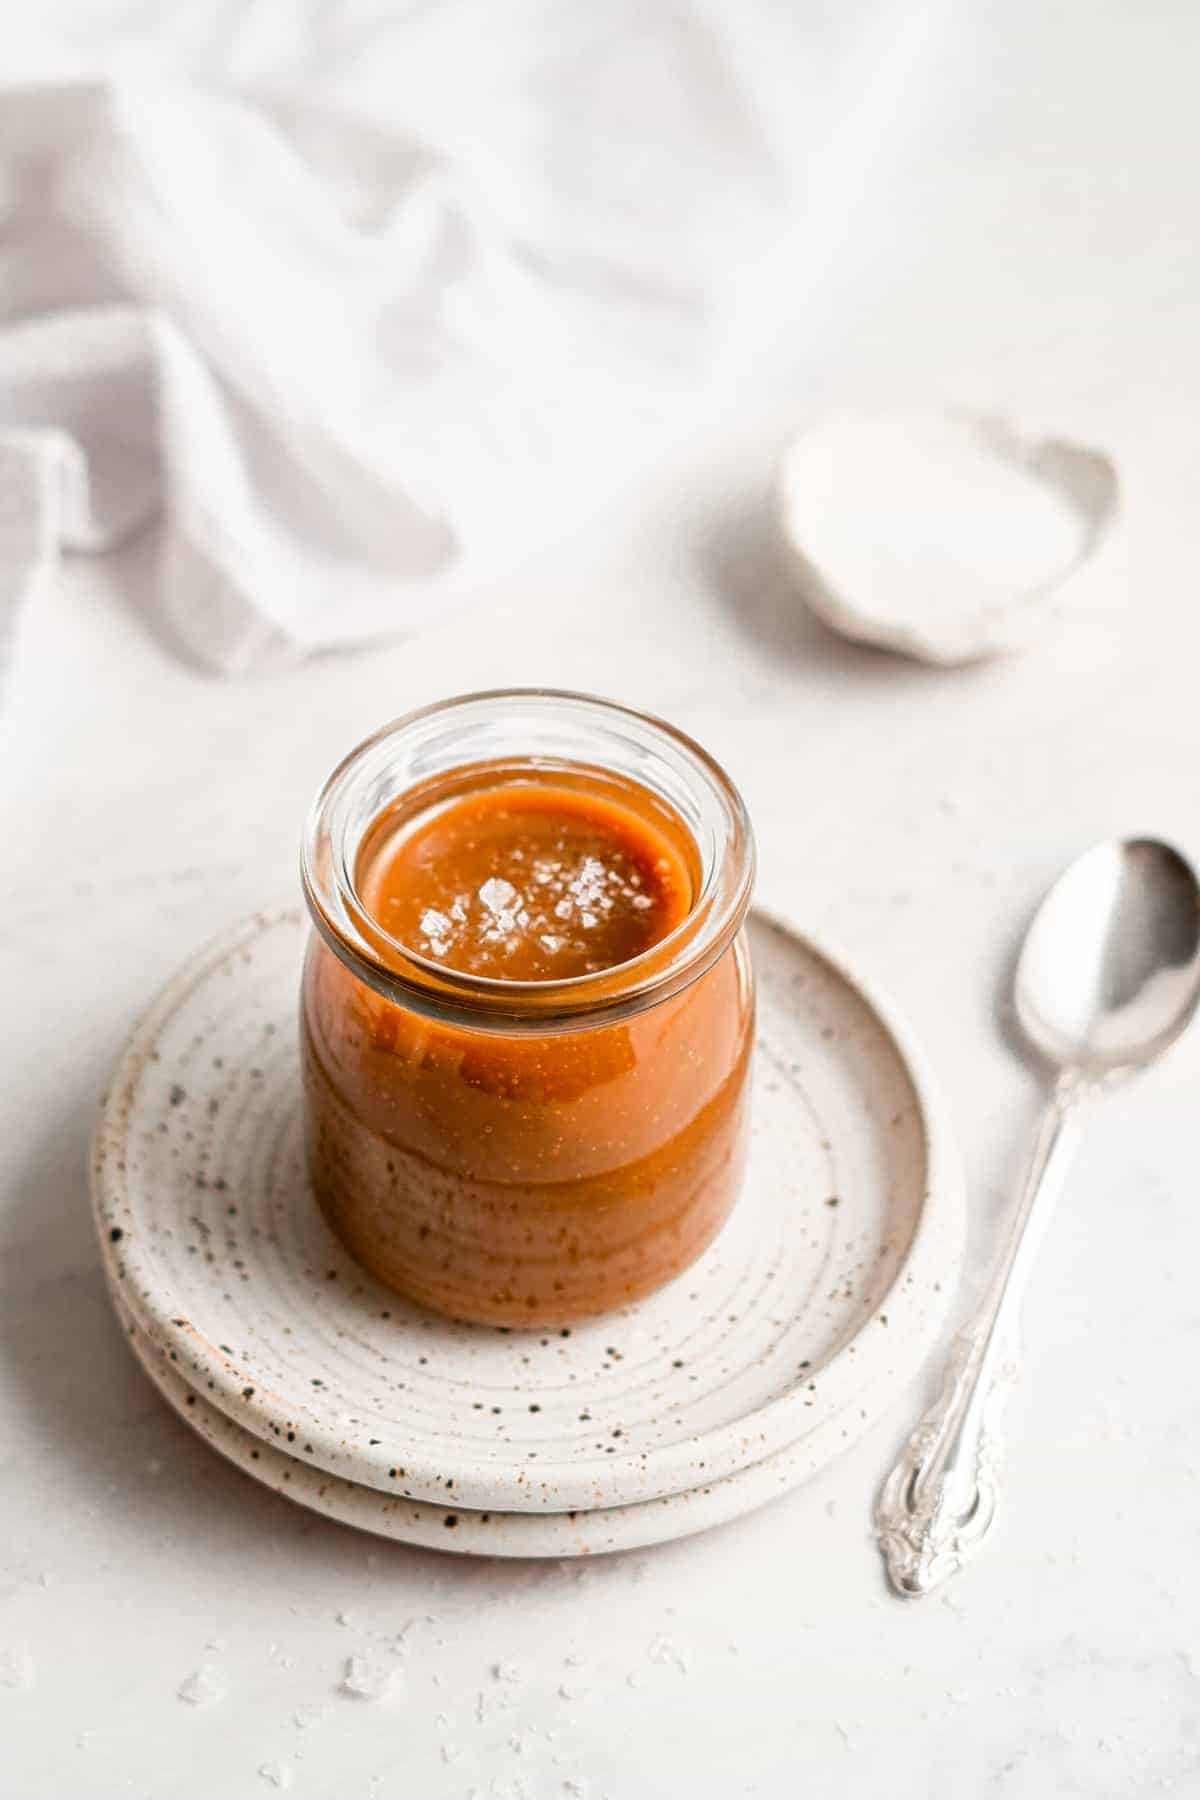 A jar of vegan caramel sauce on a plate.